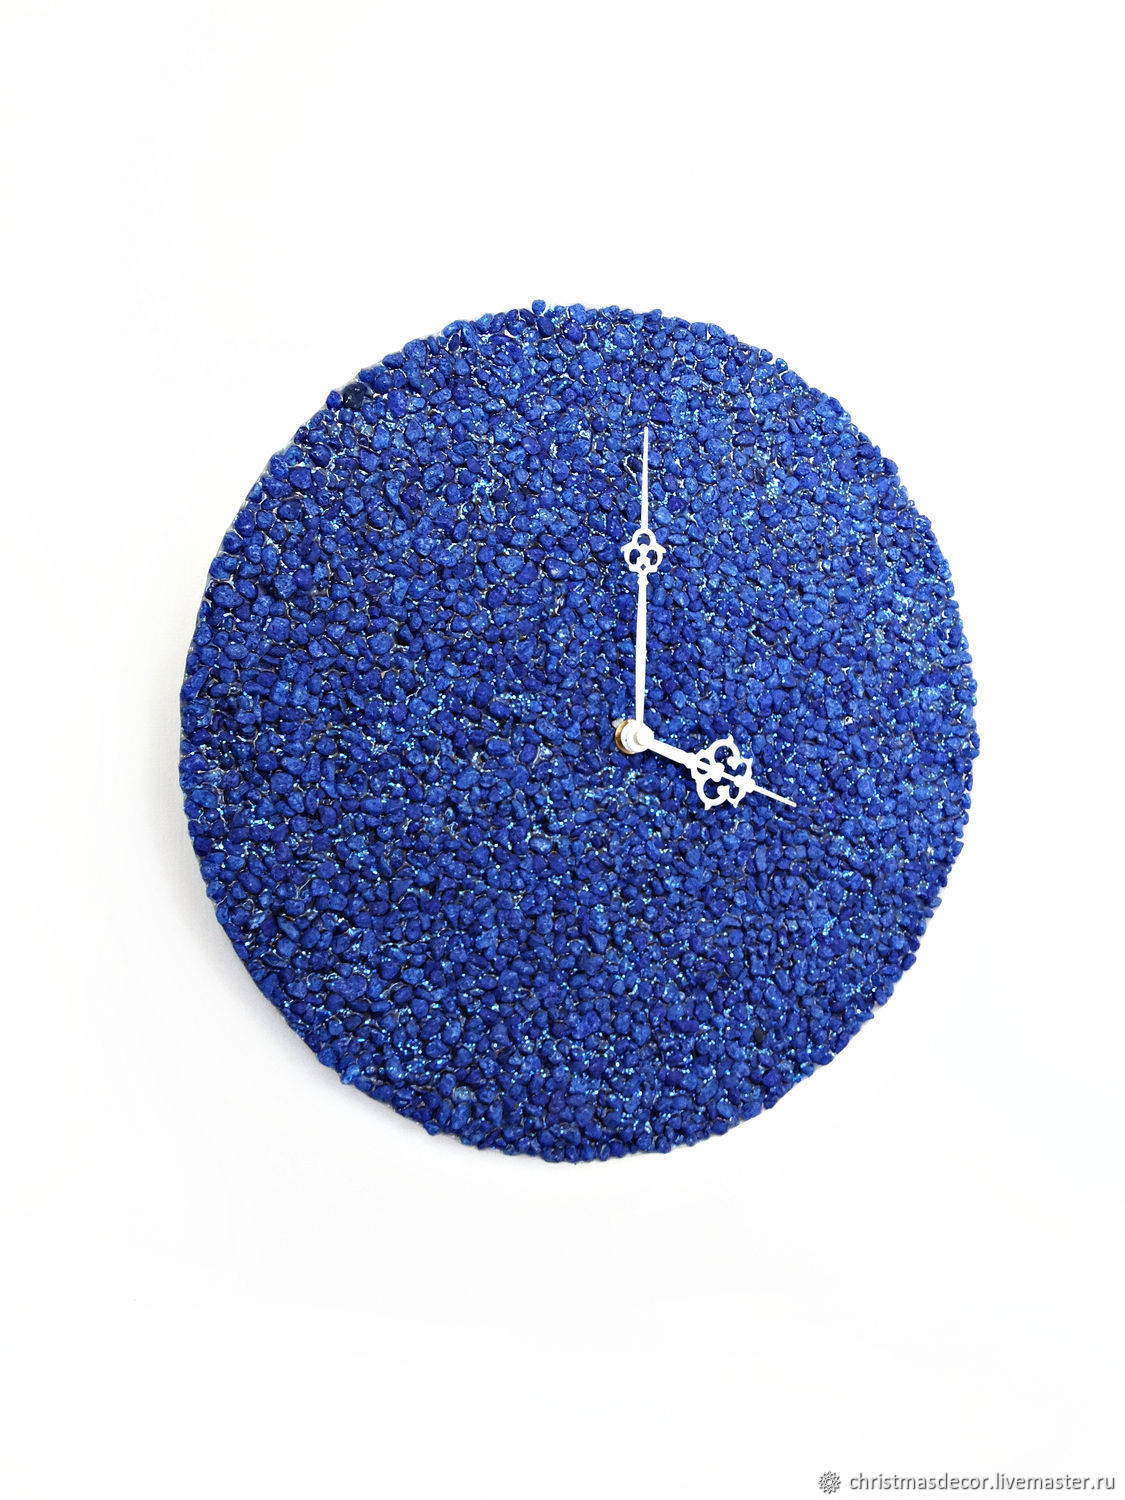 Настенные часы синий цвет